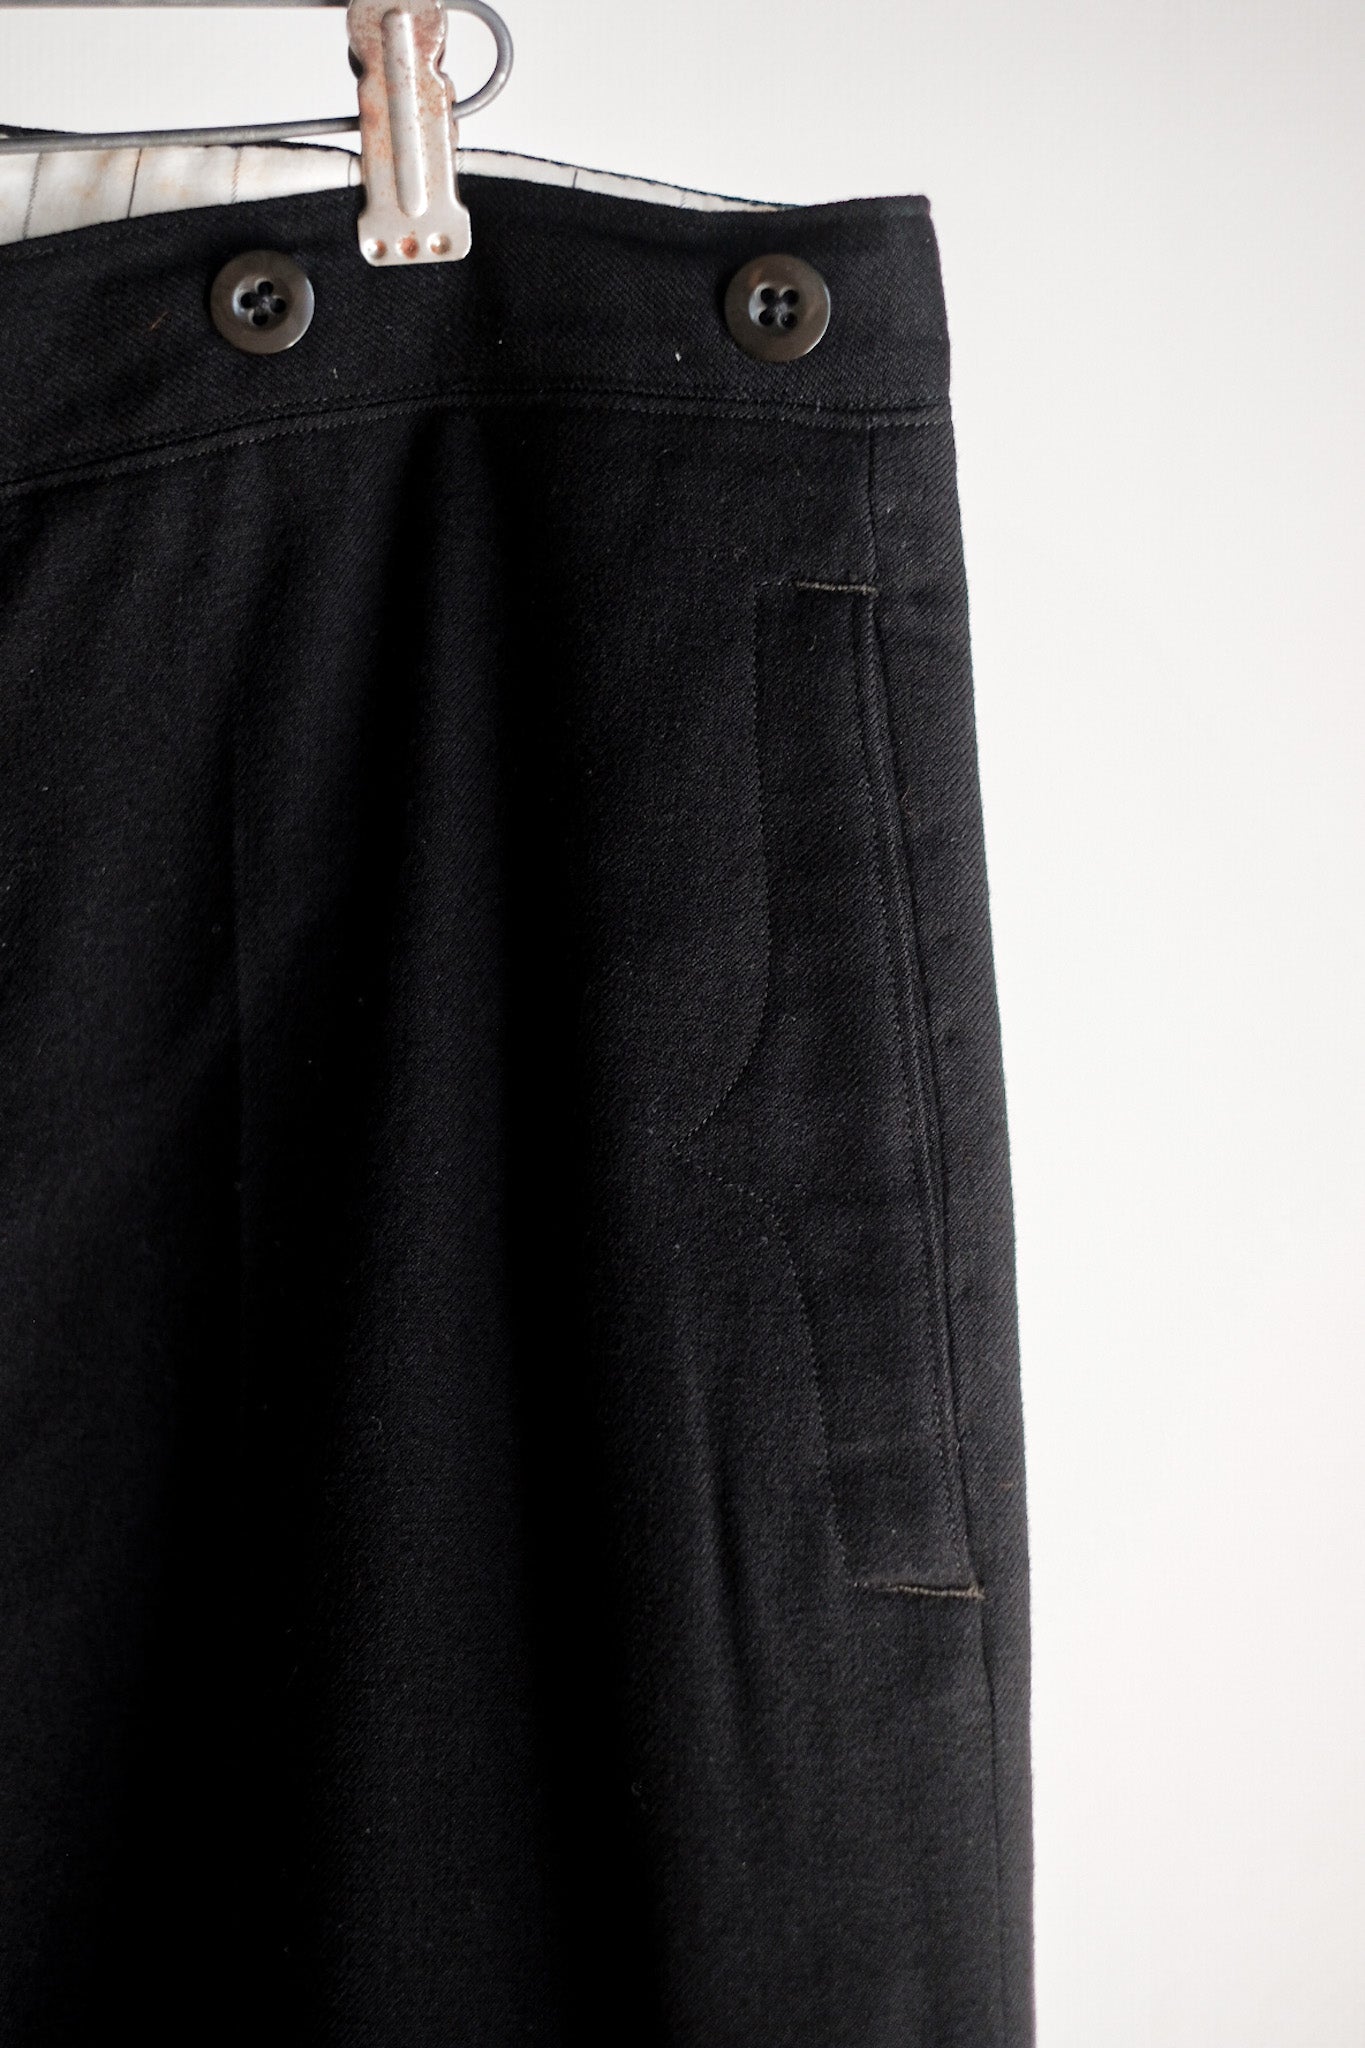 [〜40年代]德國復古黑色羊毛長褲